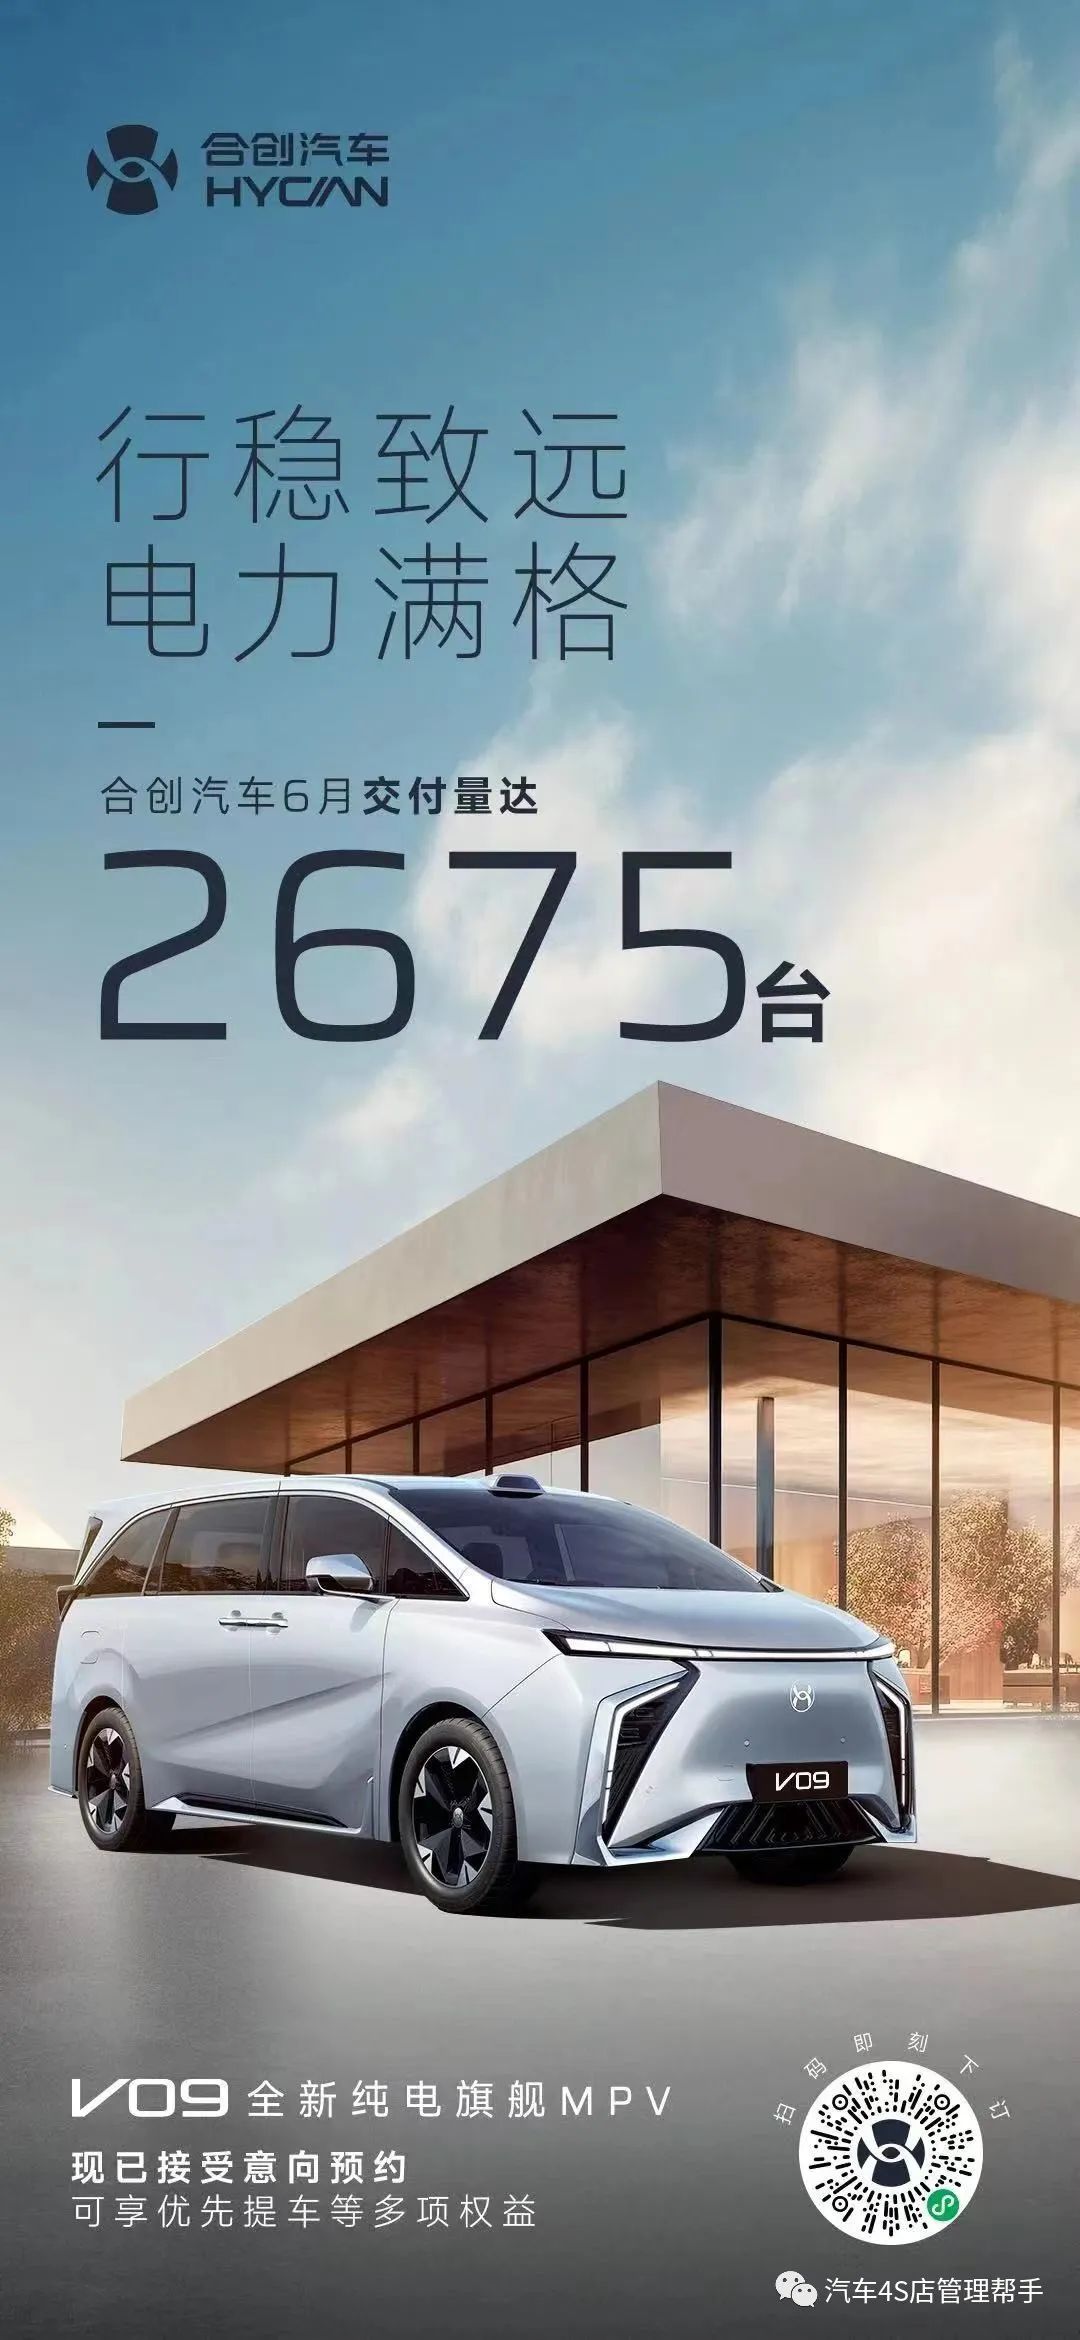 2023年4月汽车销量快报_2022汽车销量_2021汽车销量排行榜3月份